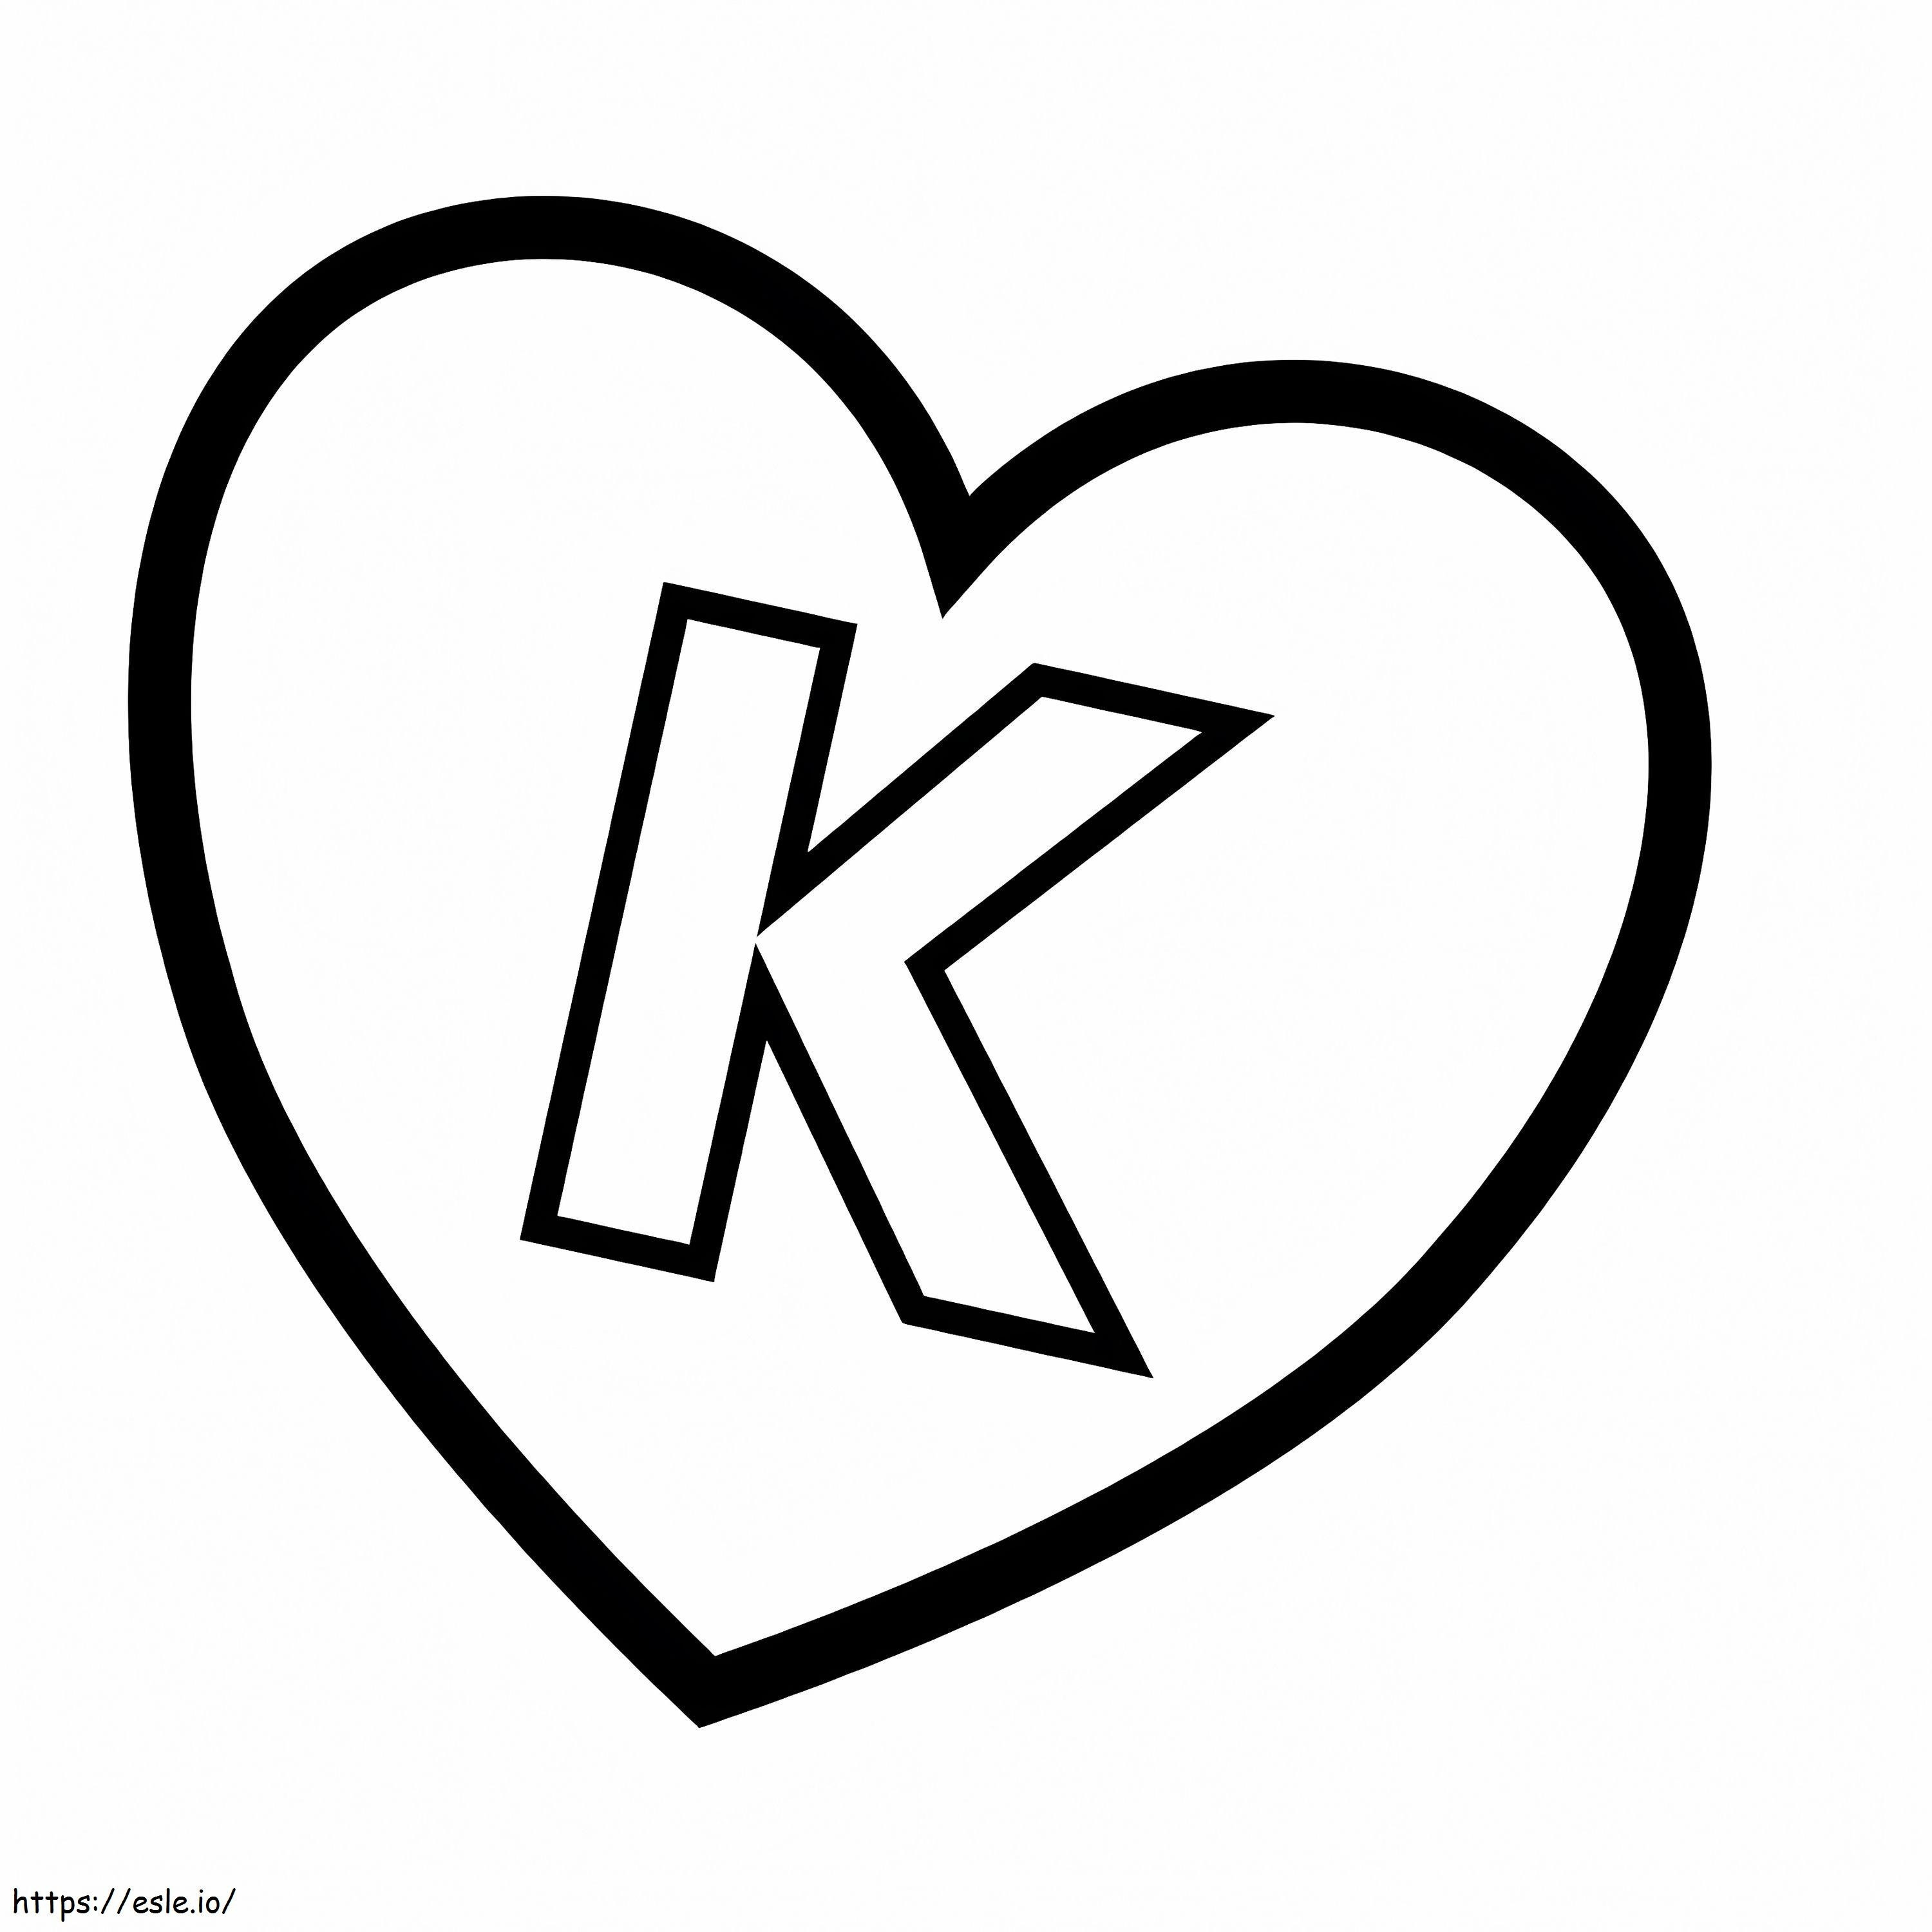 Coloriage Lettre K en coeur à imprimer dessin